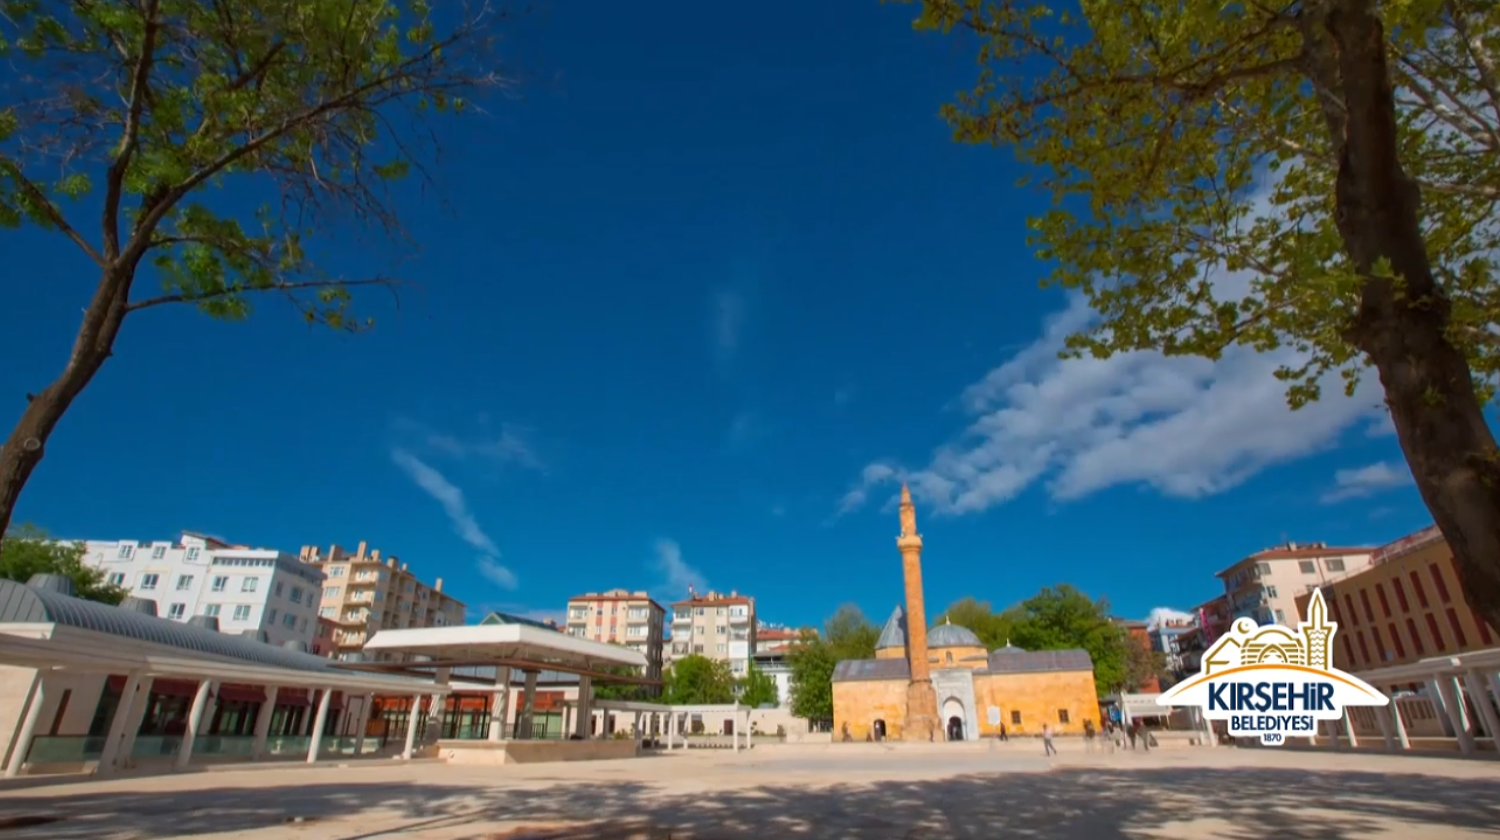 Kırşehir Belediyesi Kırşehir Tanıtım